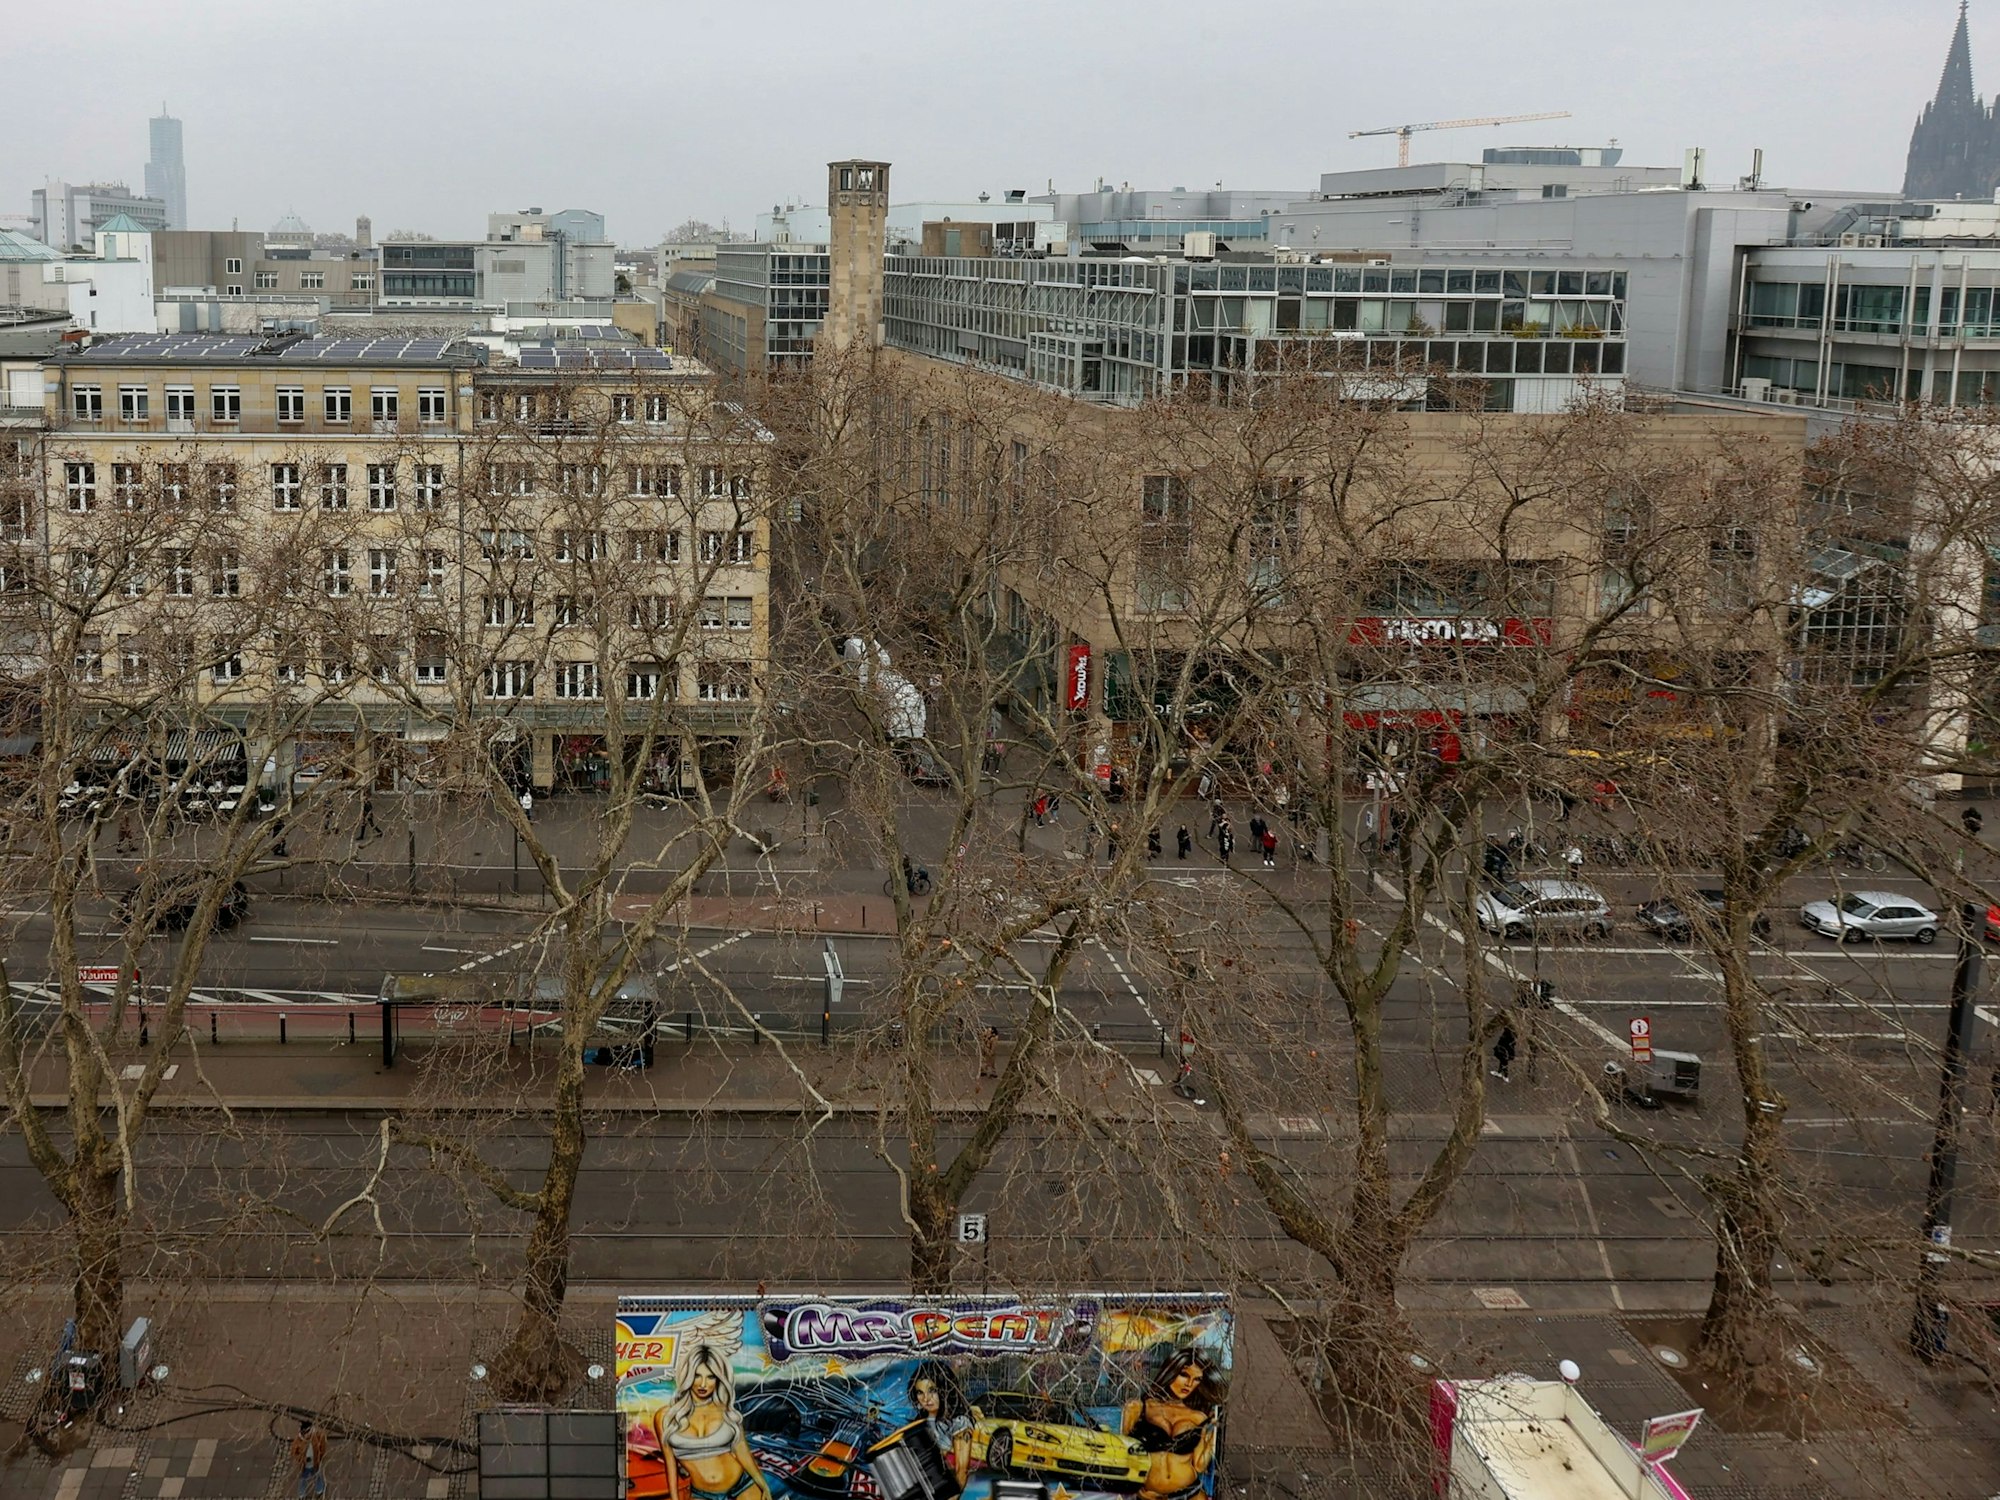 Blick auf die Richmodstraße: Das Eck-Haus soll abgerissen werden und durch einen Neubau ersetzt werden.

